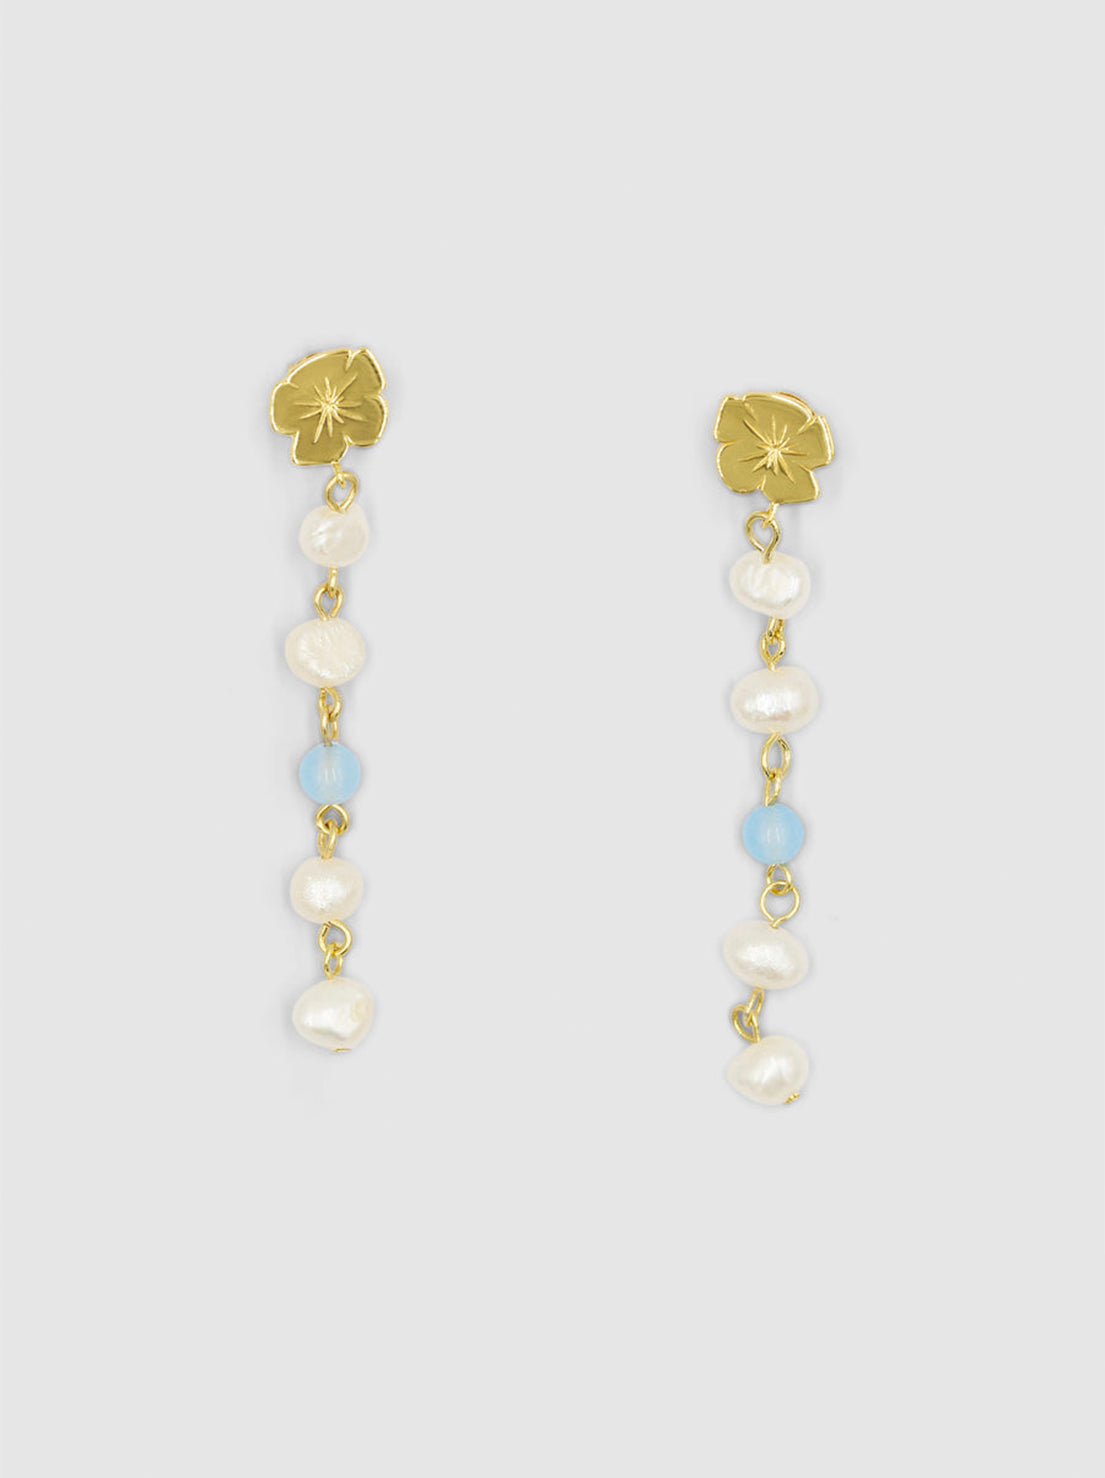 Brie Leon - Marie Pearl Drop Earrings - Gold / Sky Blue Jasper